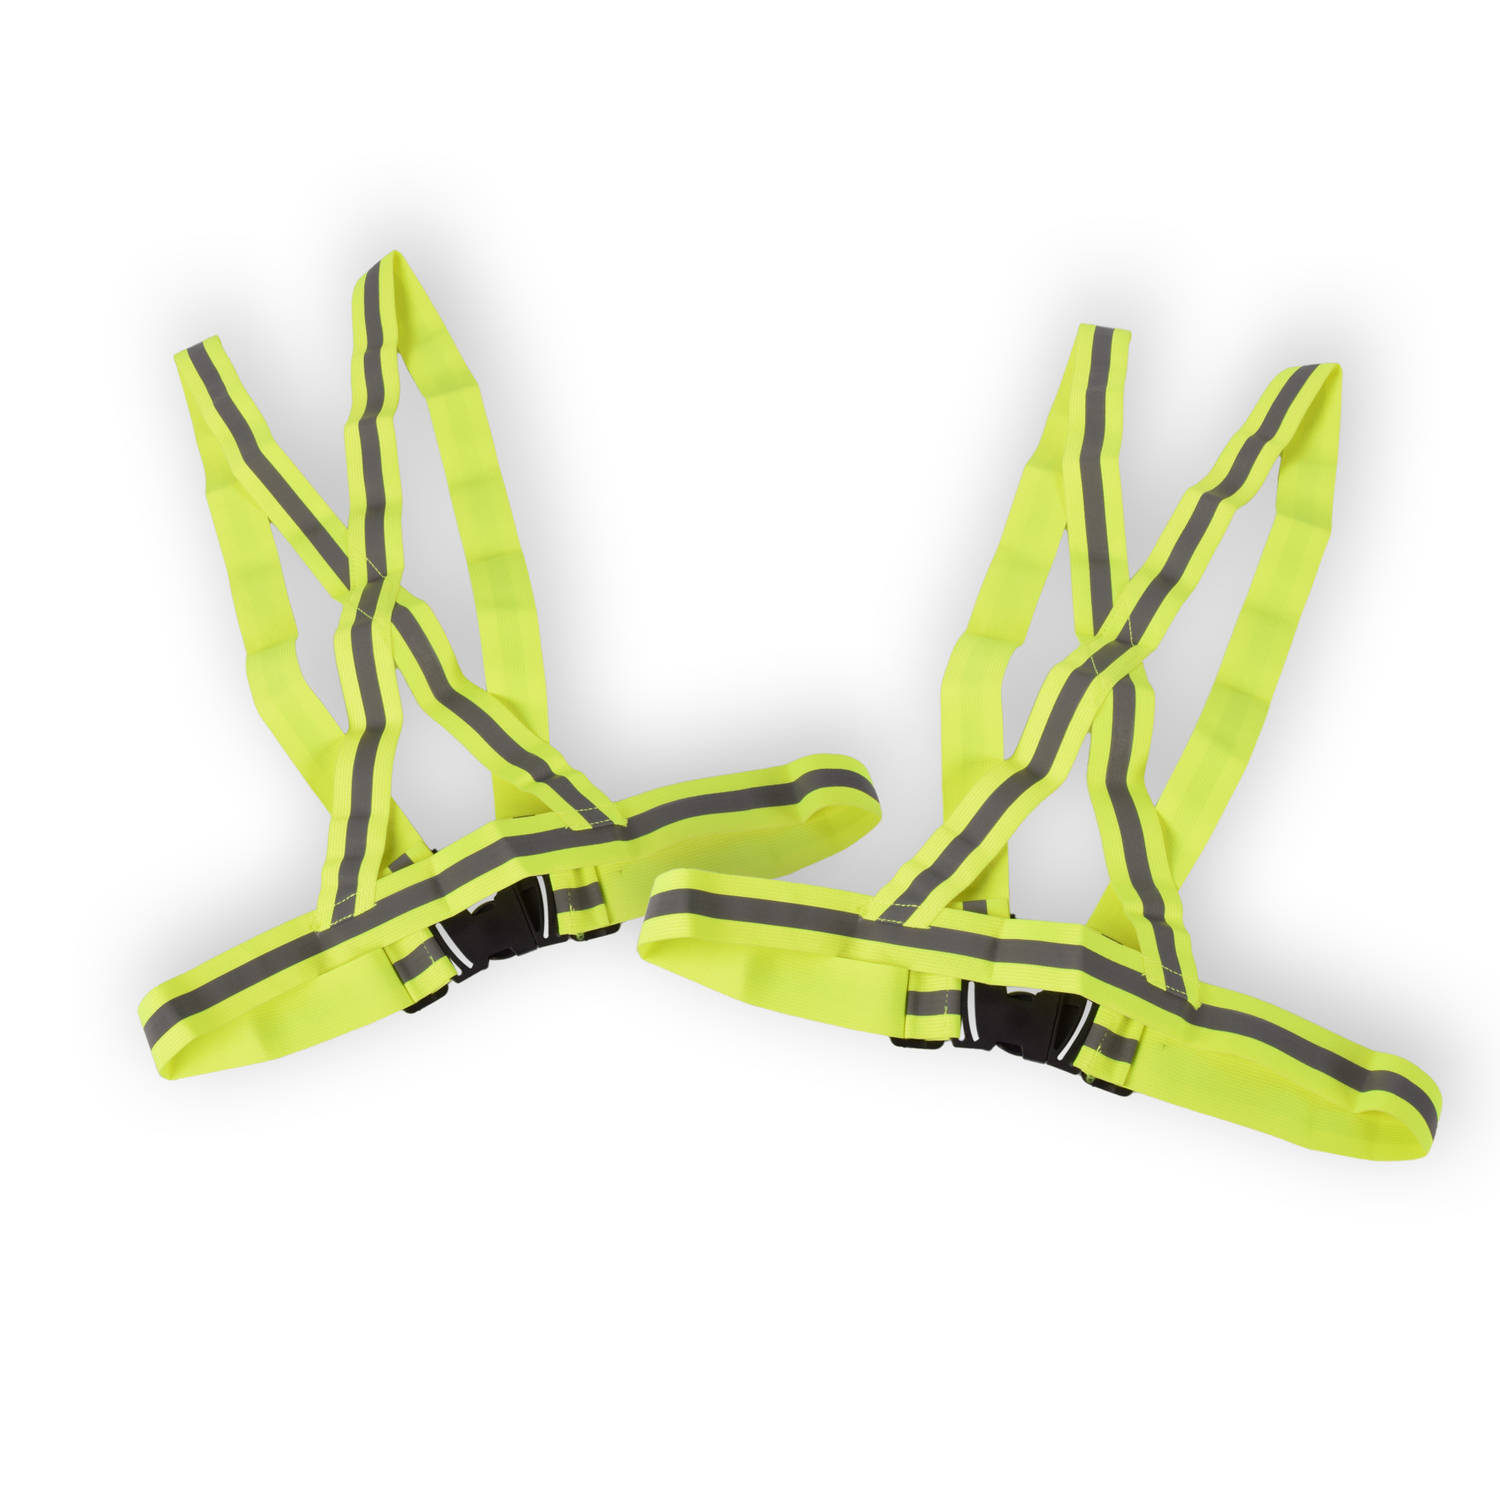 Duo Veiligheidsvestje Volwassenen - Set van 2 - Groen/Geel - 100% Polyester - One Size - Geschikt voor Auto & Motor, Sport, Fietsen & Klussen